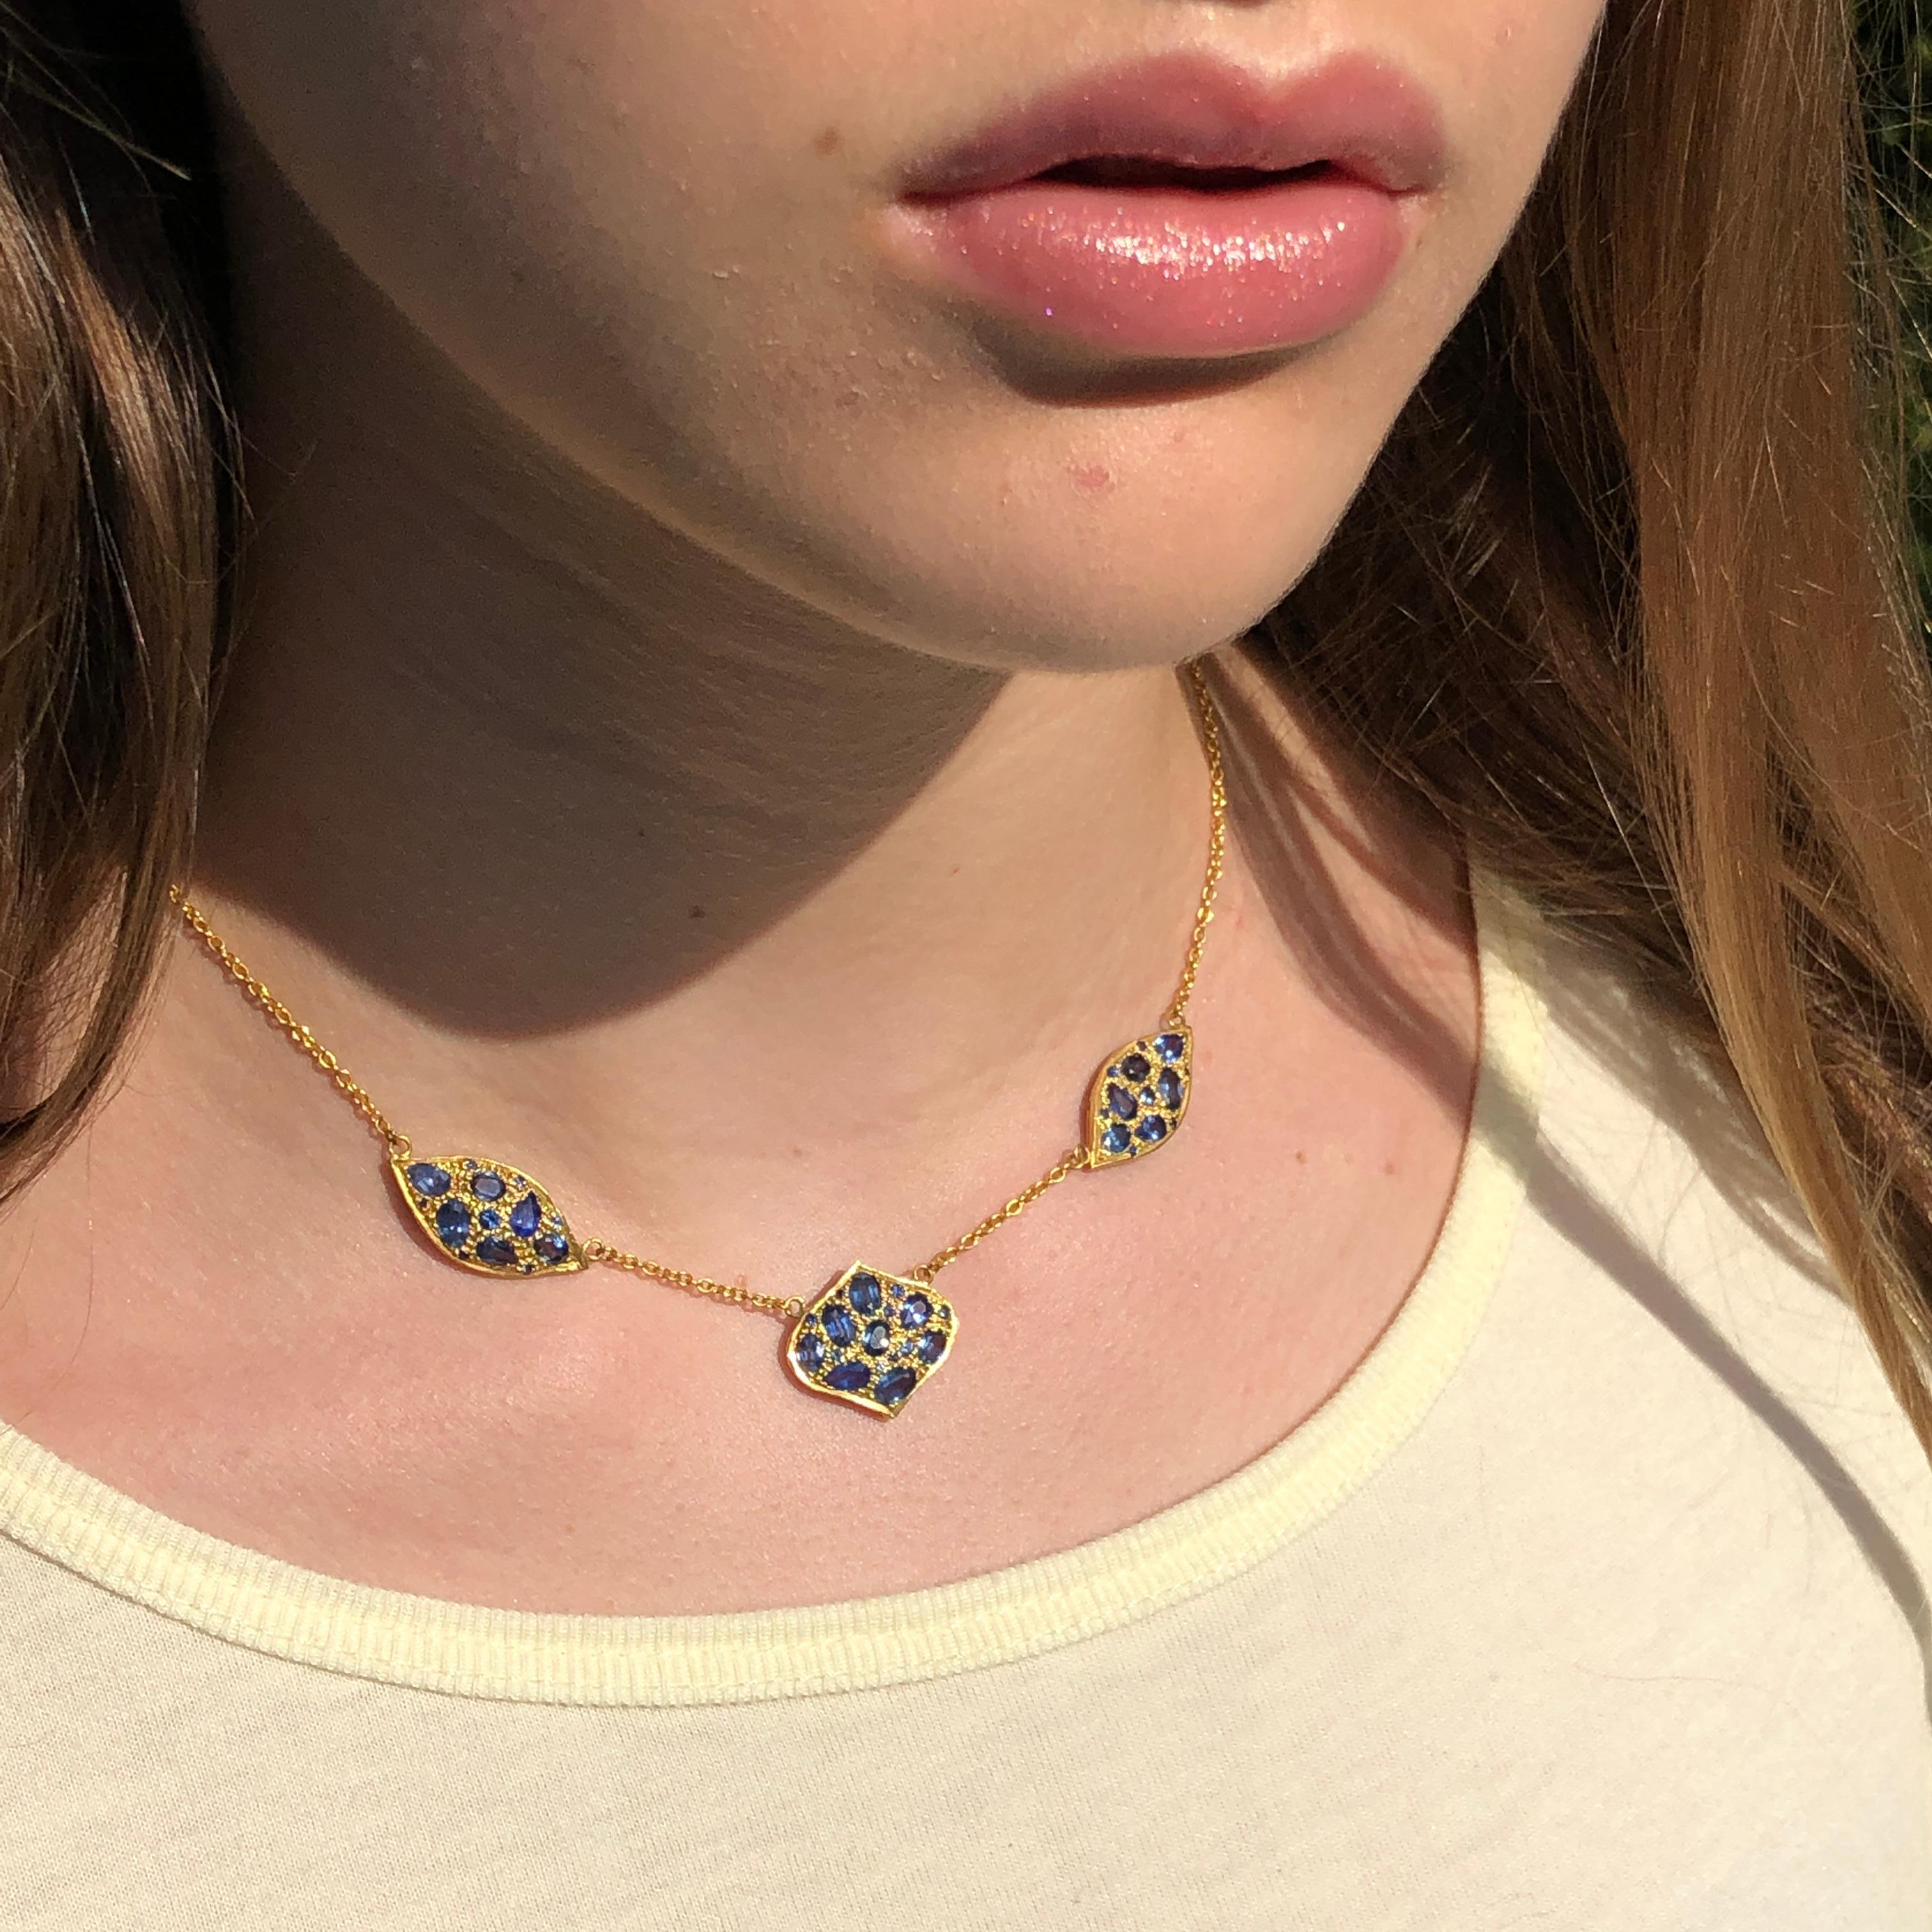 Lauren Harper Collection Halskette mit blauen Saphiren, zart gefasst in einer 18kt Gelbgoldkornfassung an einer 18kt Goldkette.  Gesamtlänge 16,25 Zoll, kann aber um 0,75 Zoll kürzer eingestellt werden.  Die Halskette sitzt direkt im Nacken und ist